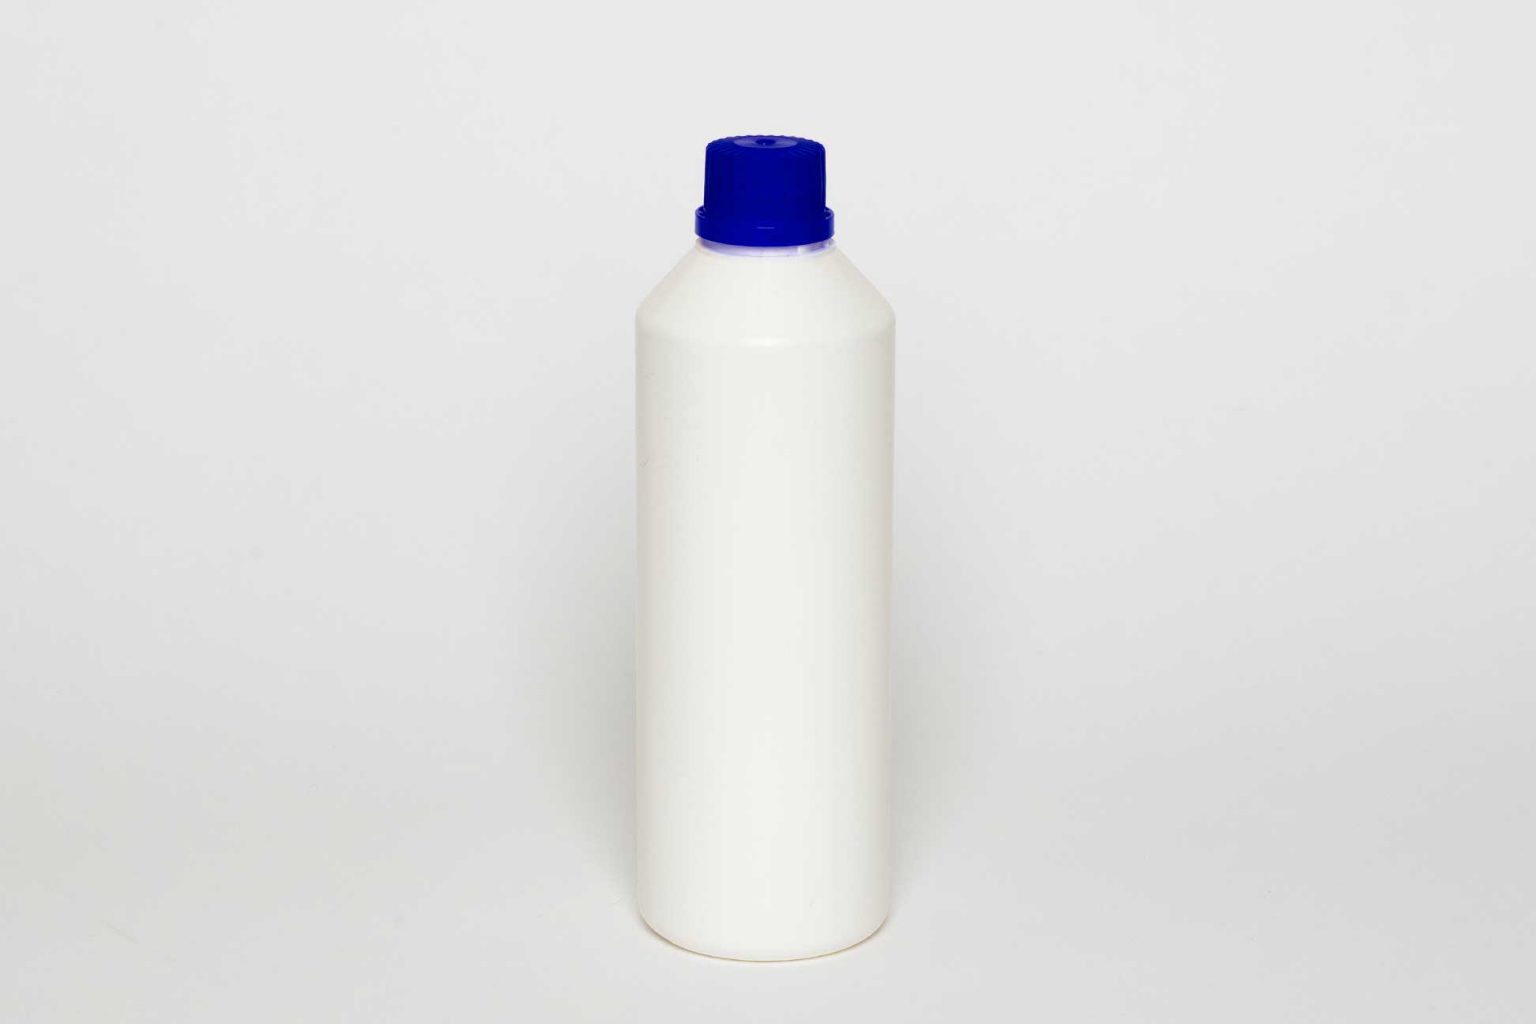 Flacone BB 75 in plastica da 500 ml, 30g, bianco, con tappo ad avvitamento.